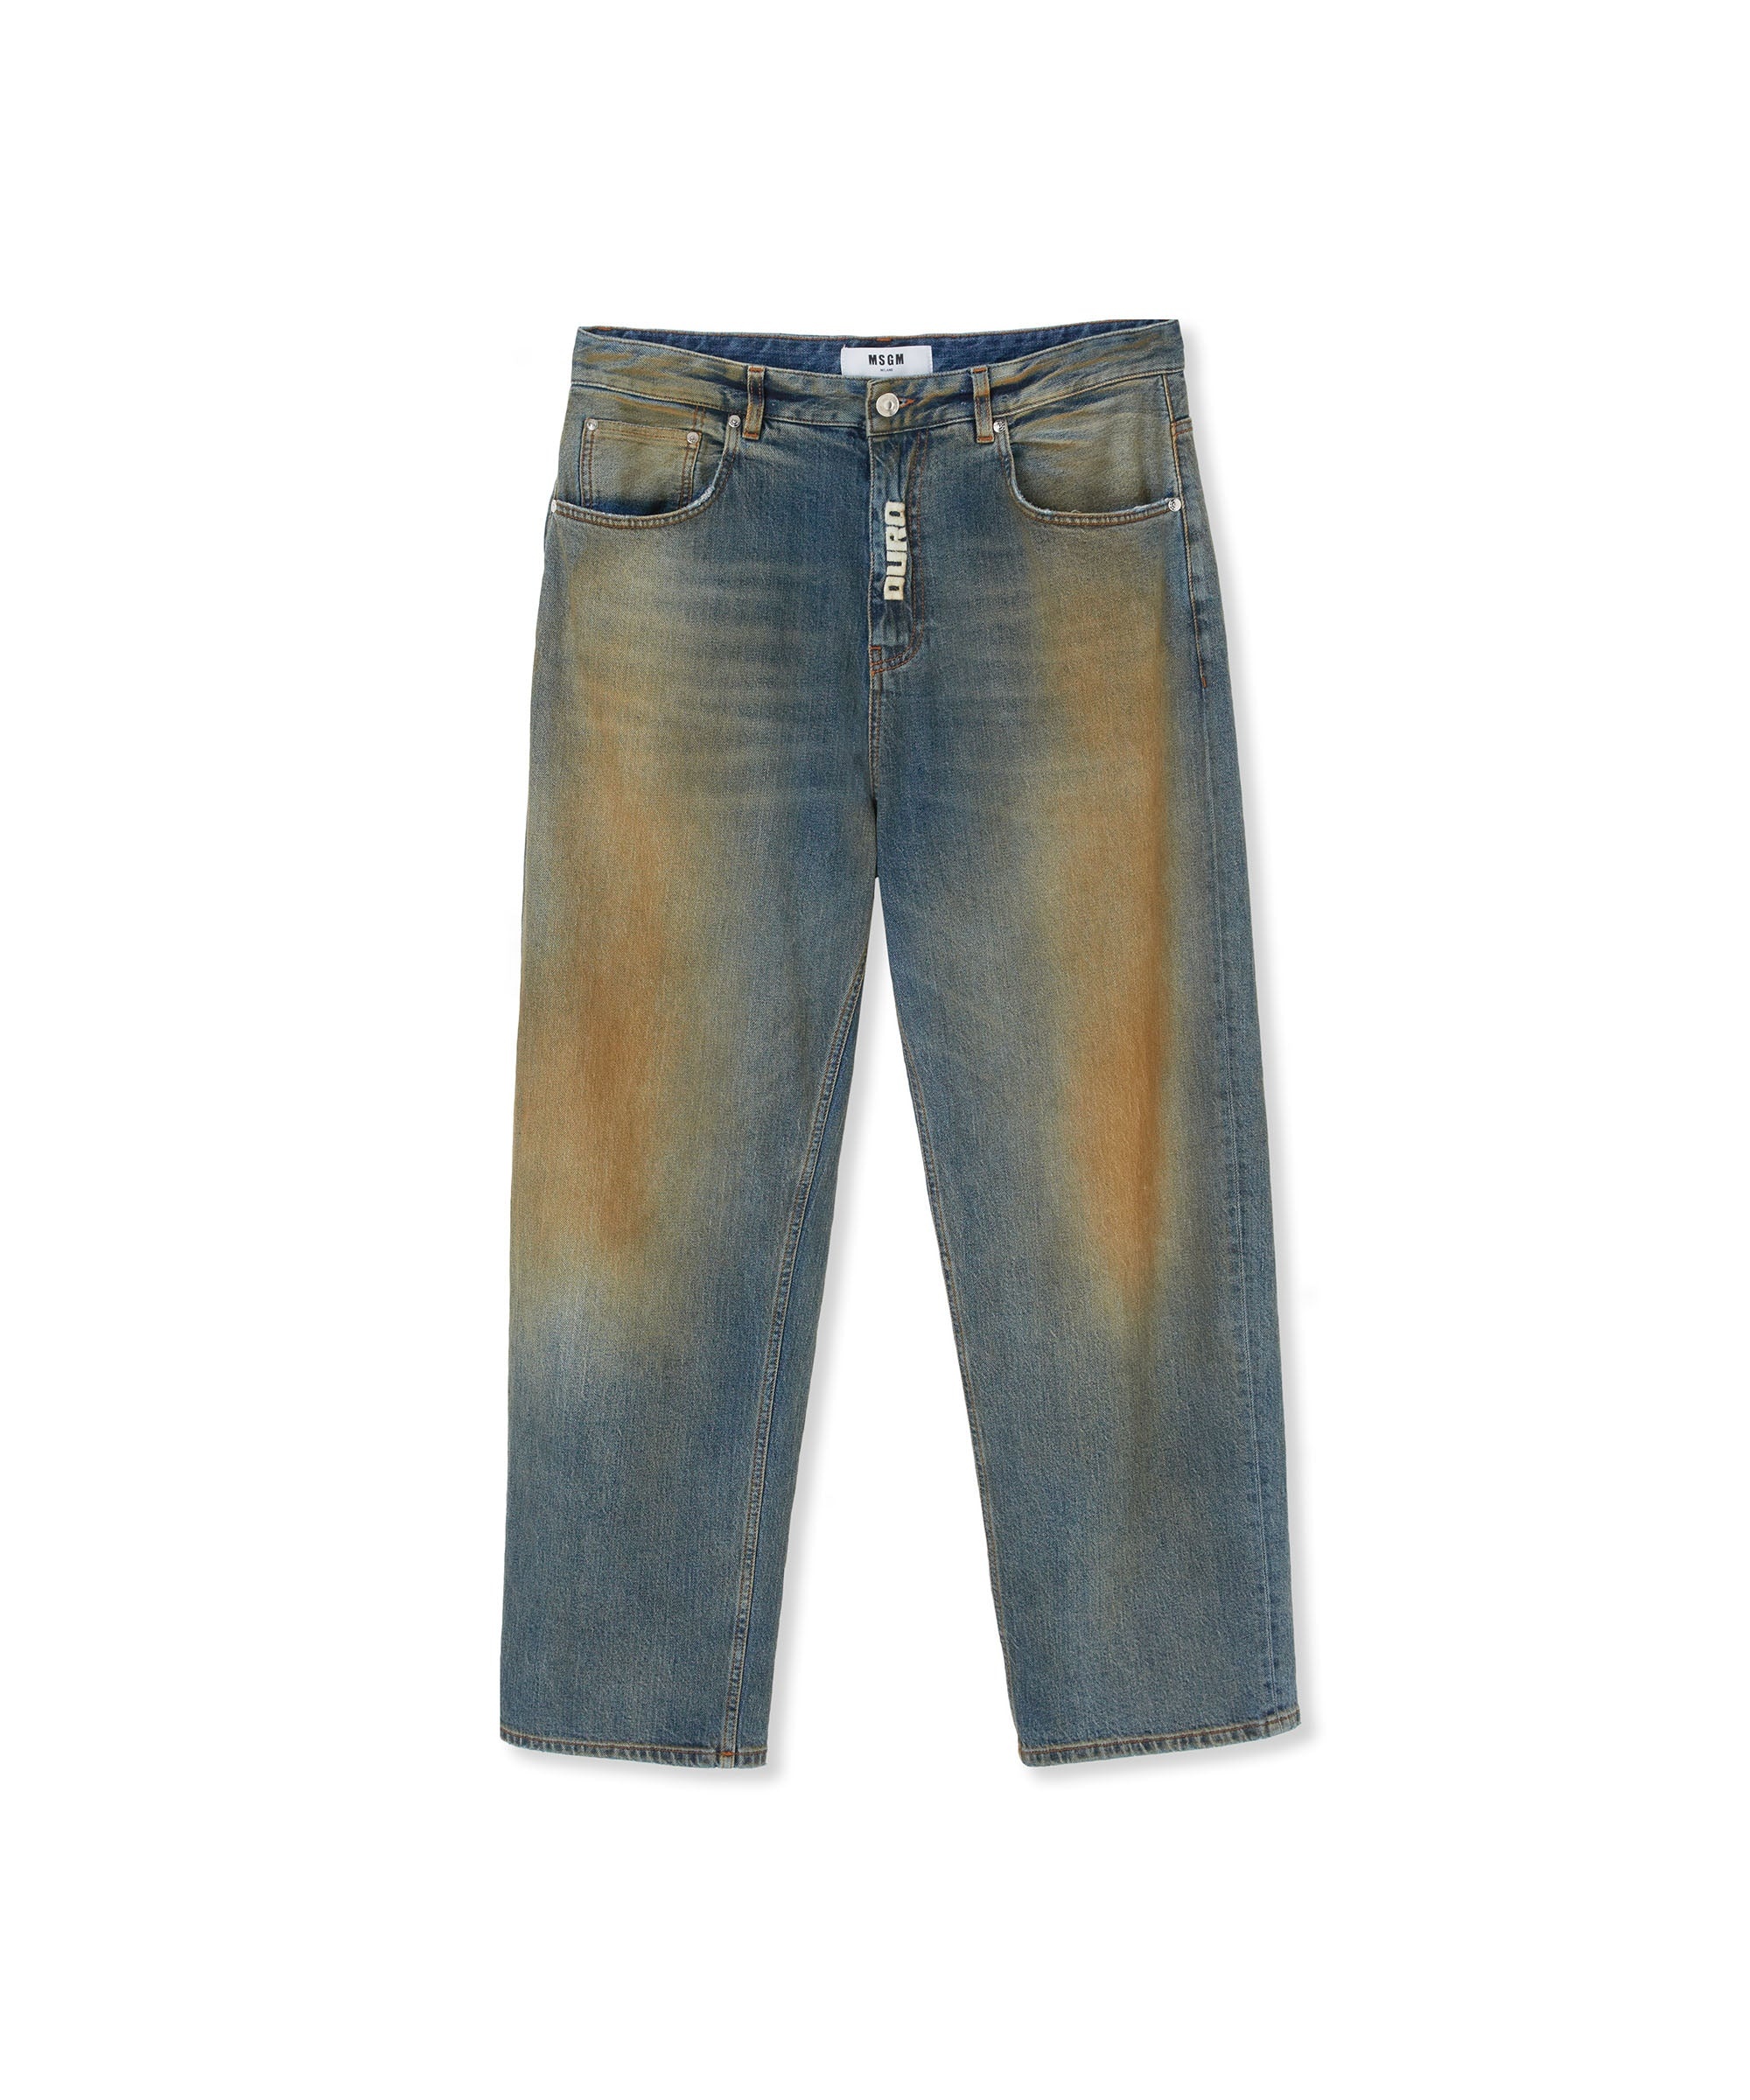 5 pocket denim pants with burned effect - 1